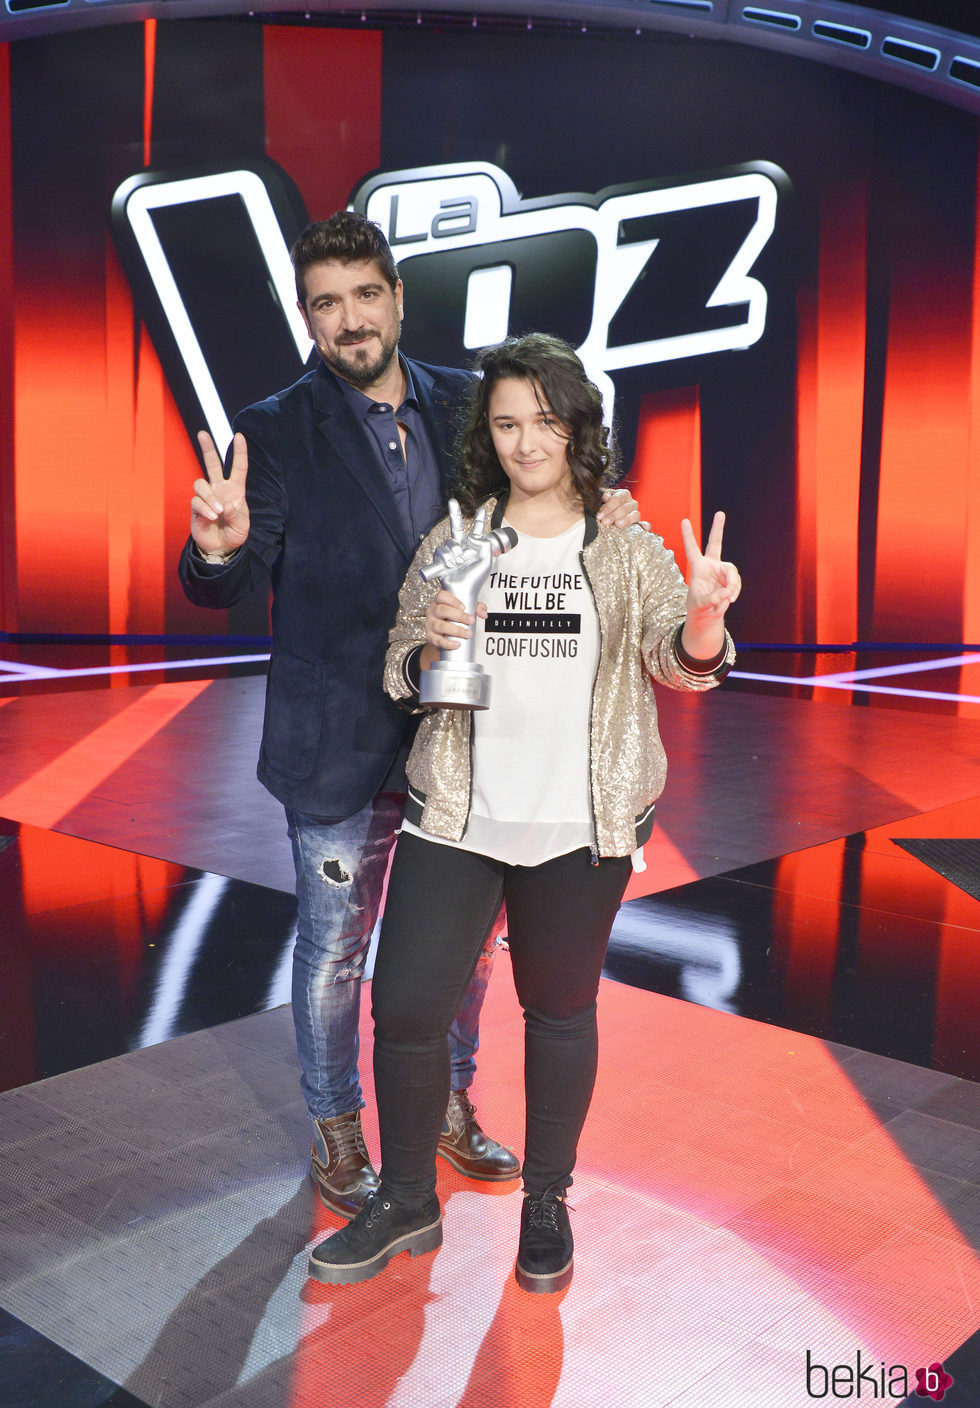 Antonio Orozco con la ganadora de 'La Voz Kids 3', Rocío Aguilar